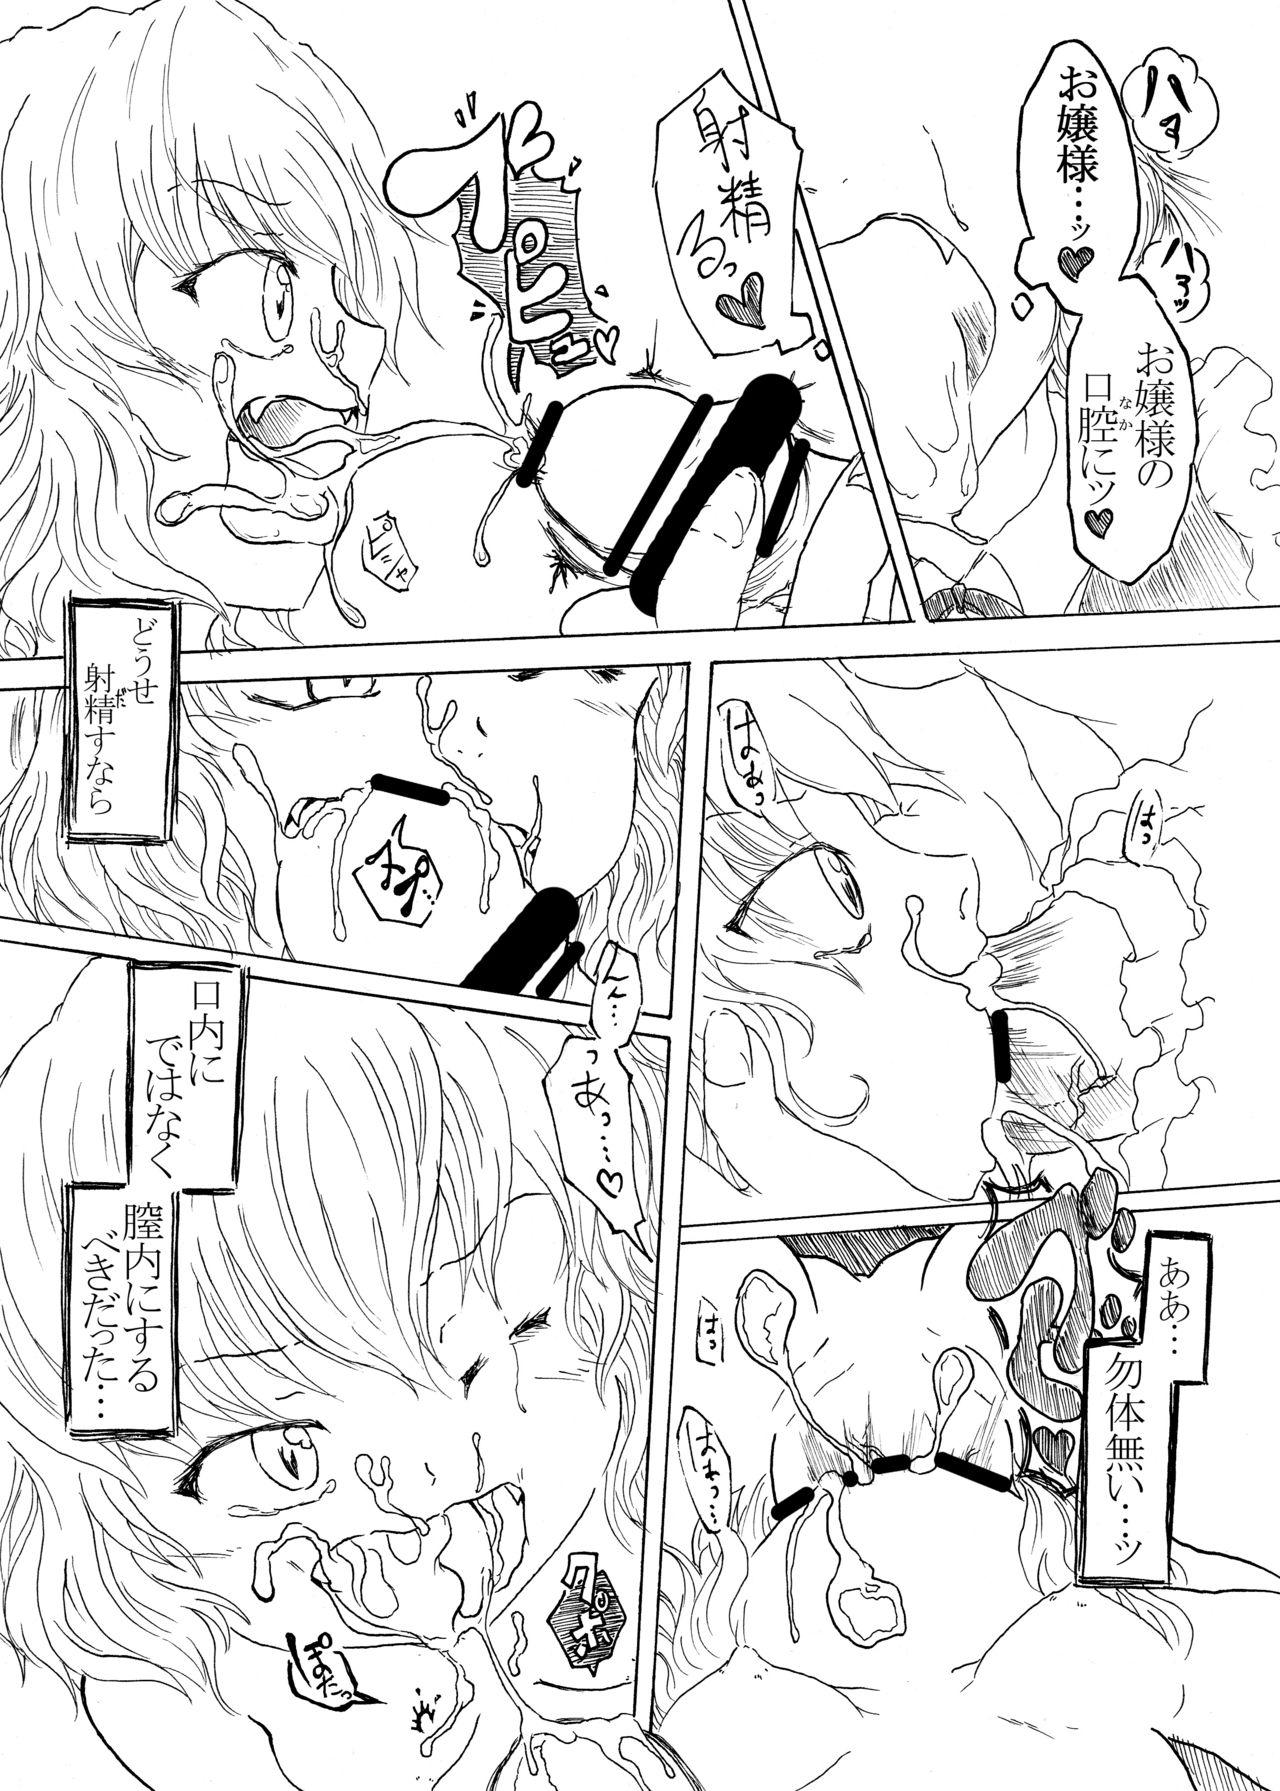 Bubblebutt Sakuya no Jikan 2:00 - Sakuya's Time F*ck 2:00 - Touhou project Culito - Page 8